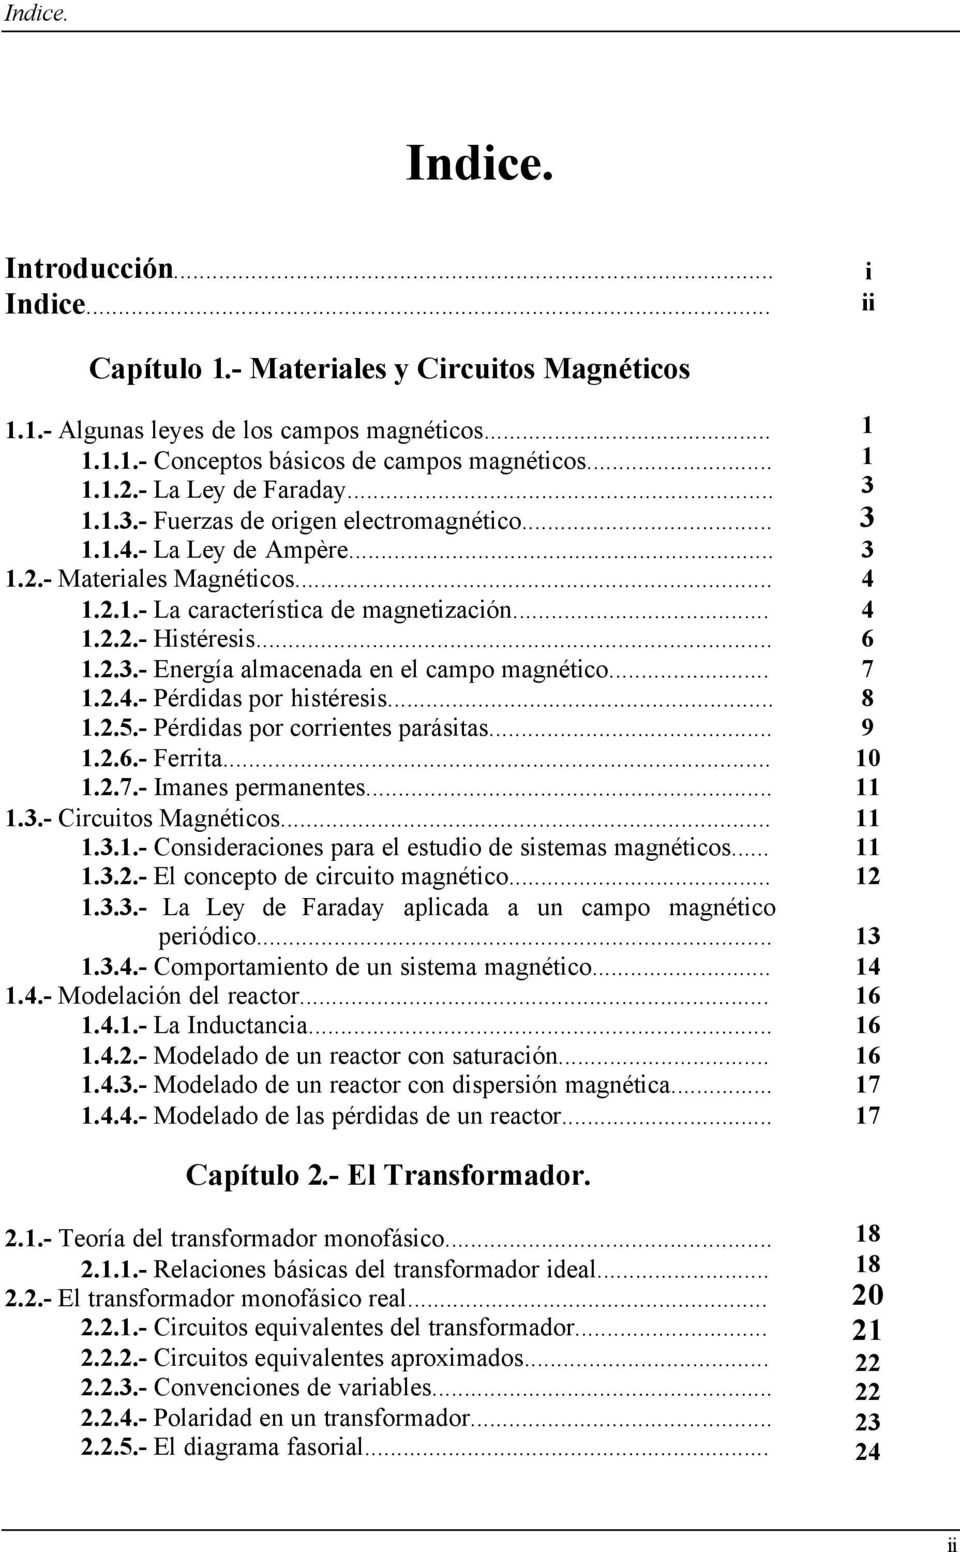 .. 1.2.4.- Pérdidas por histéresis... 1.2.5.- Pérdidas por corrientes parásitas... 1.2.6.- Ferrita... 1.2.7.- Imanes permanentes... 1.3.- Circuitos Magnéticos... 1.3.1.- Consideraciones para el estudio de sistemas magnéticos.